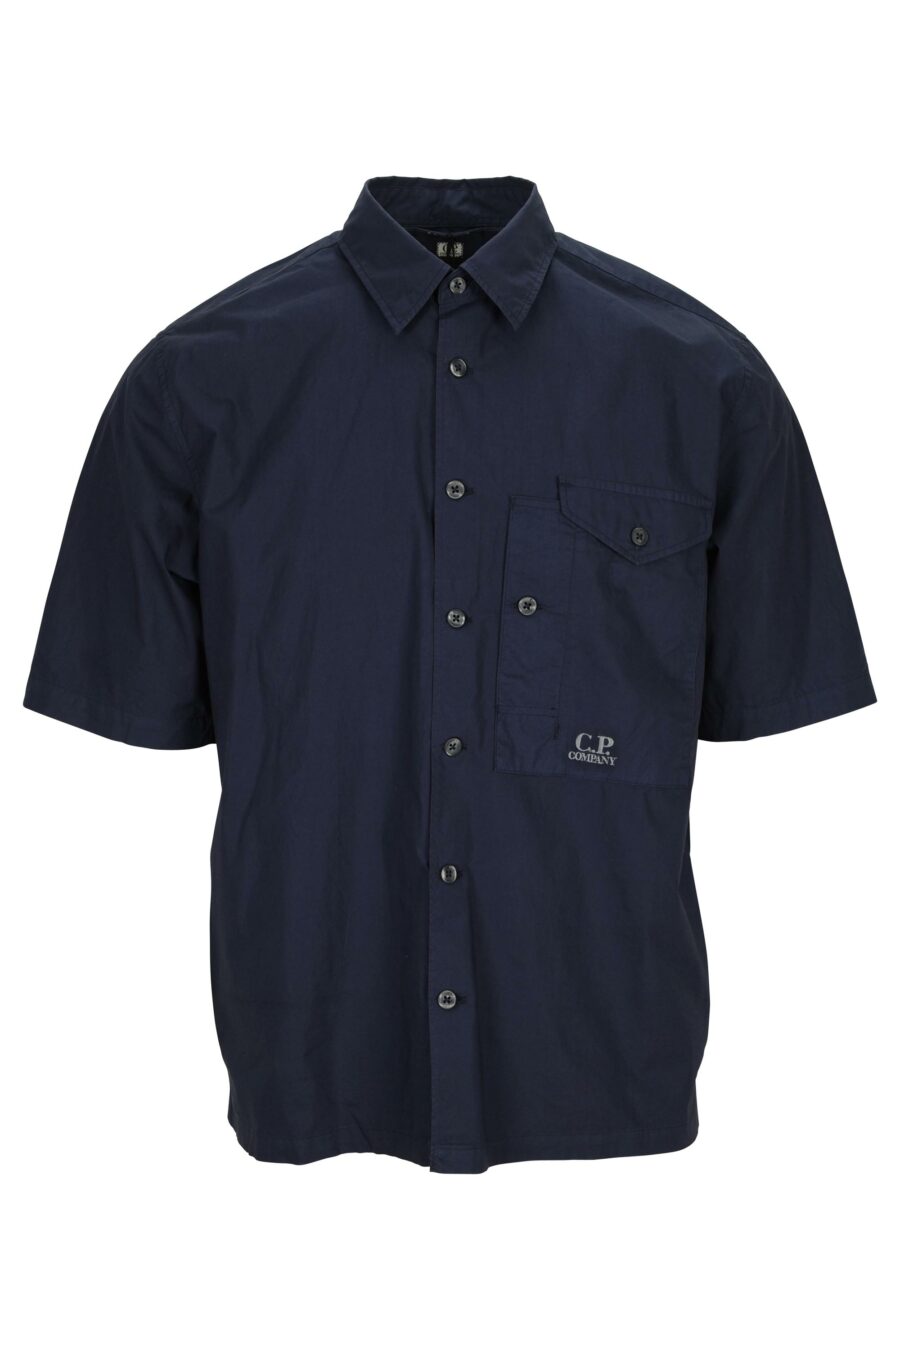 Camisa azul oscuro manga corta con bolsillo y minilogo - 7620943811551